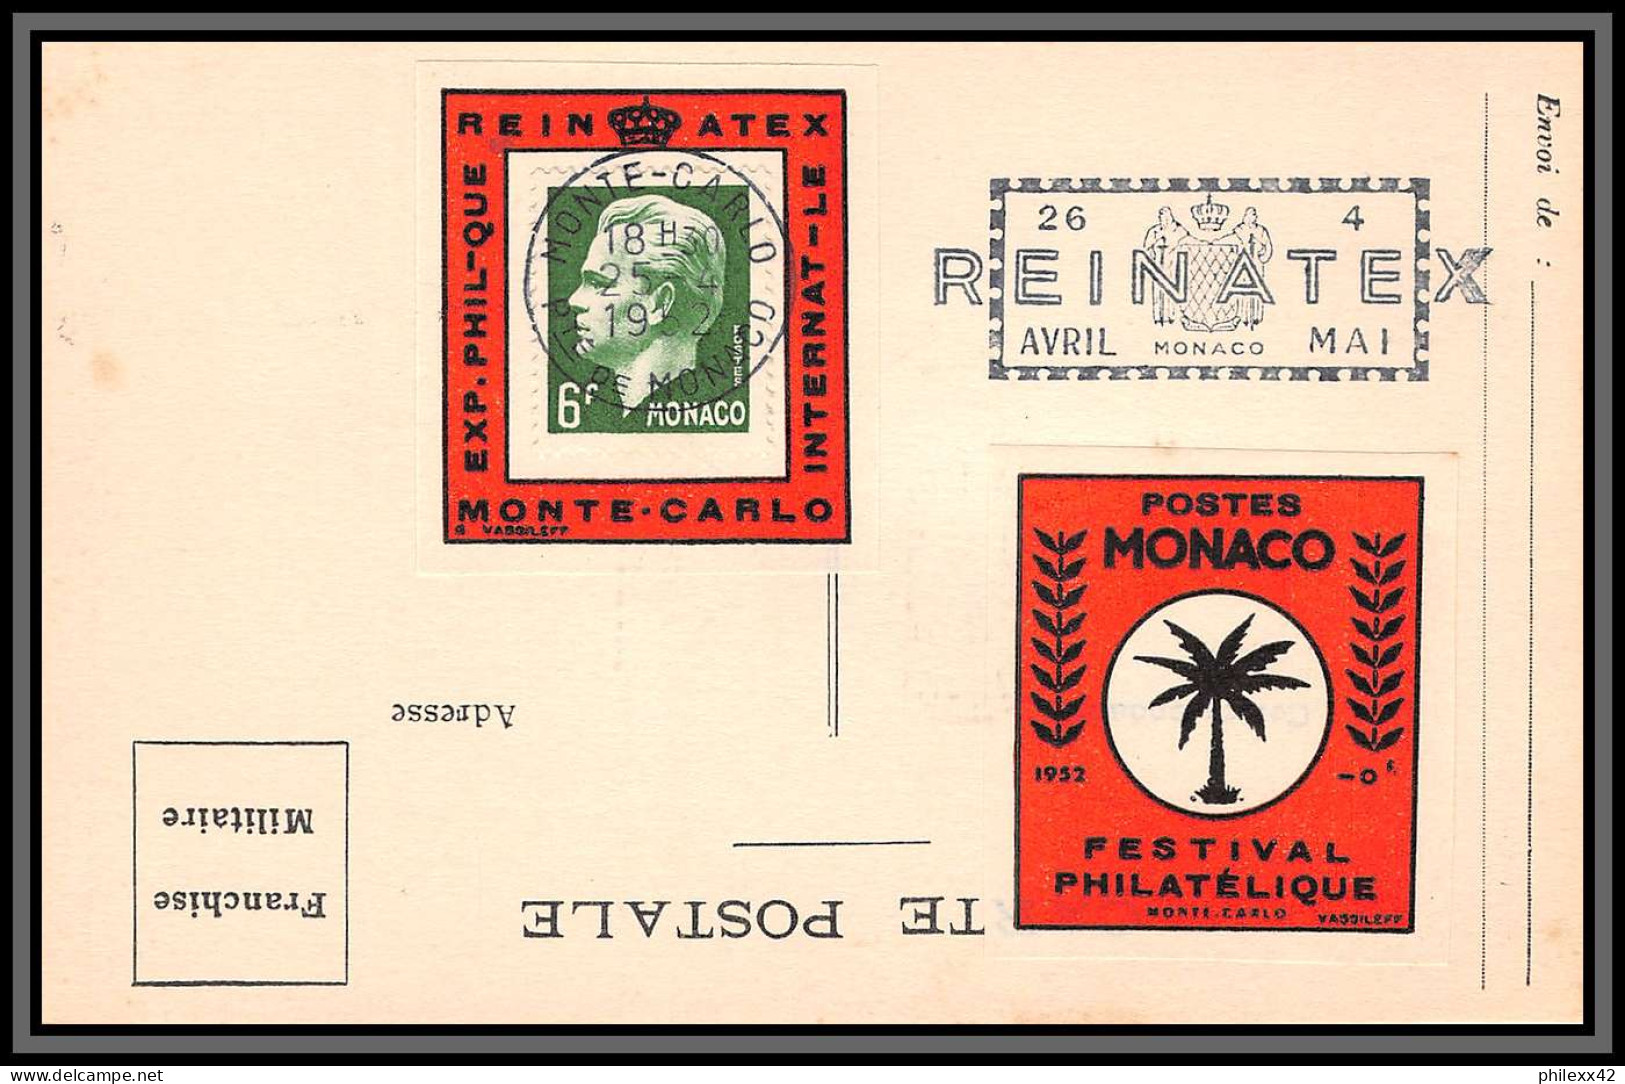 74926 (6) REINATEX 1952 joli lot collection vignette porte timbre stamp holder lettre cover Monaco france italia